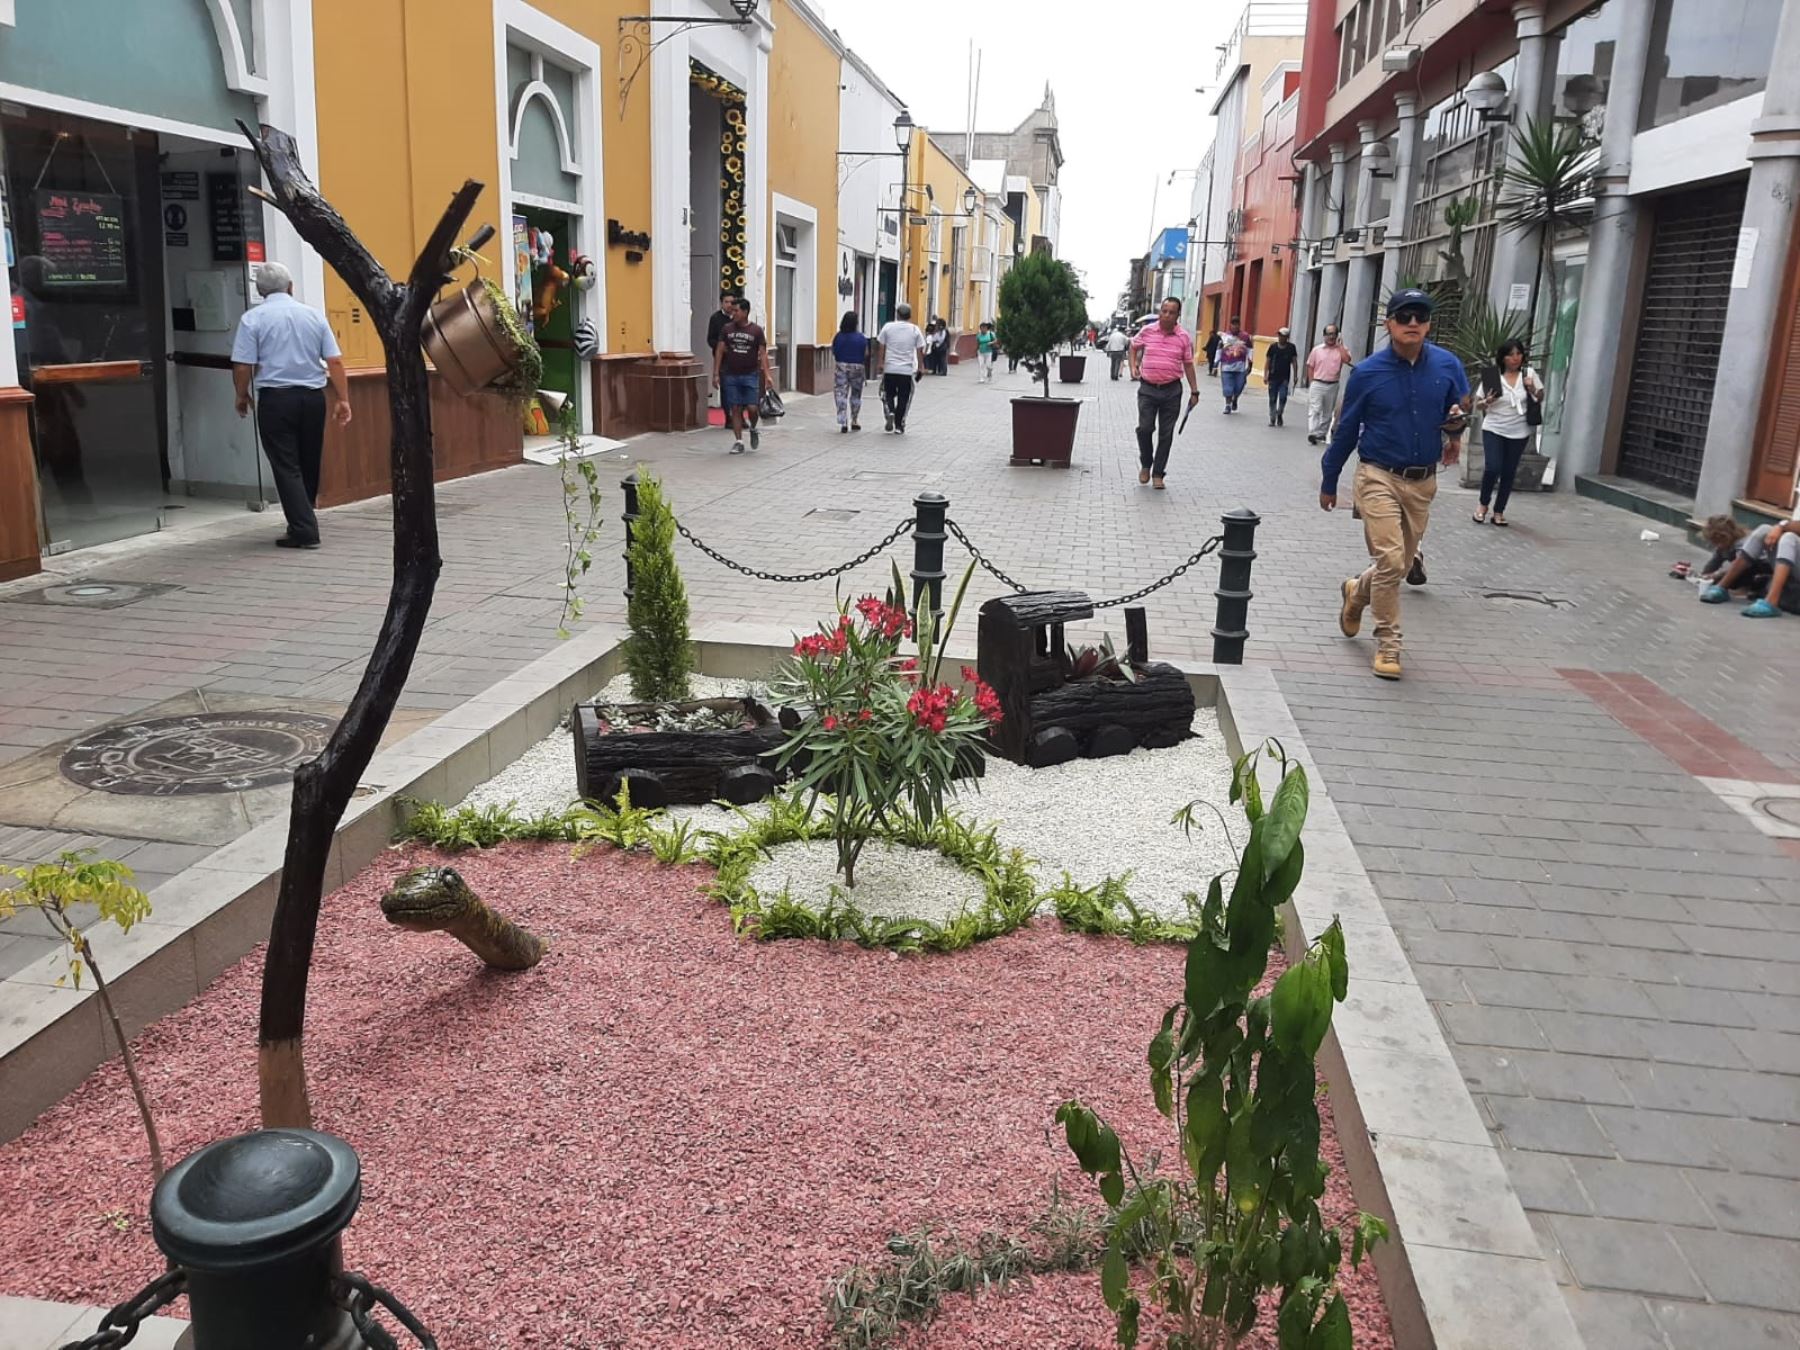 La ciudad de Trujillo recupera su ornato. La municipalidad recuperó las piletas del paseo Pizarro, ubicado en el centro histórico, y las convirtió en hermosos jardines. Foto: Luis Puell.